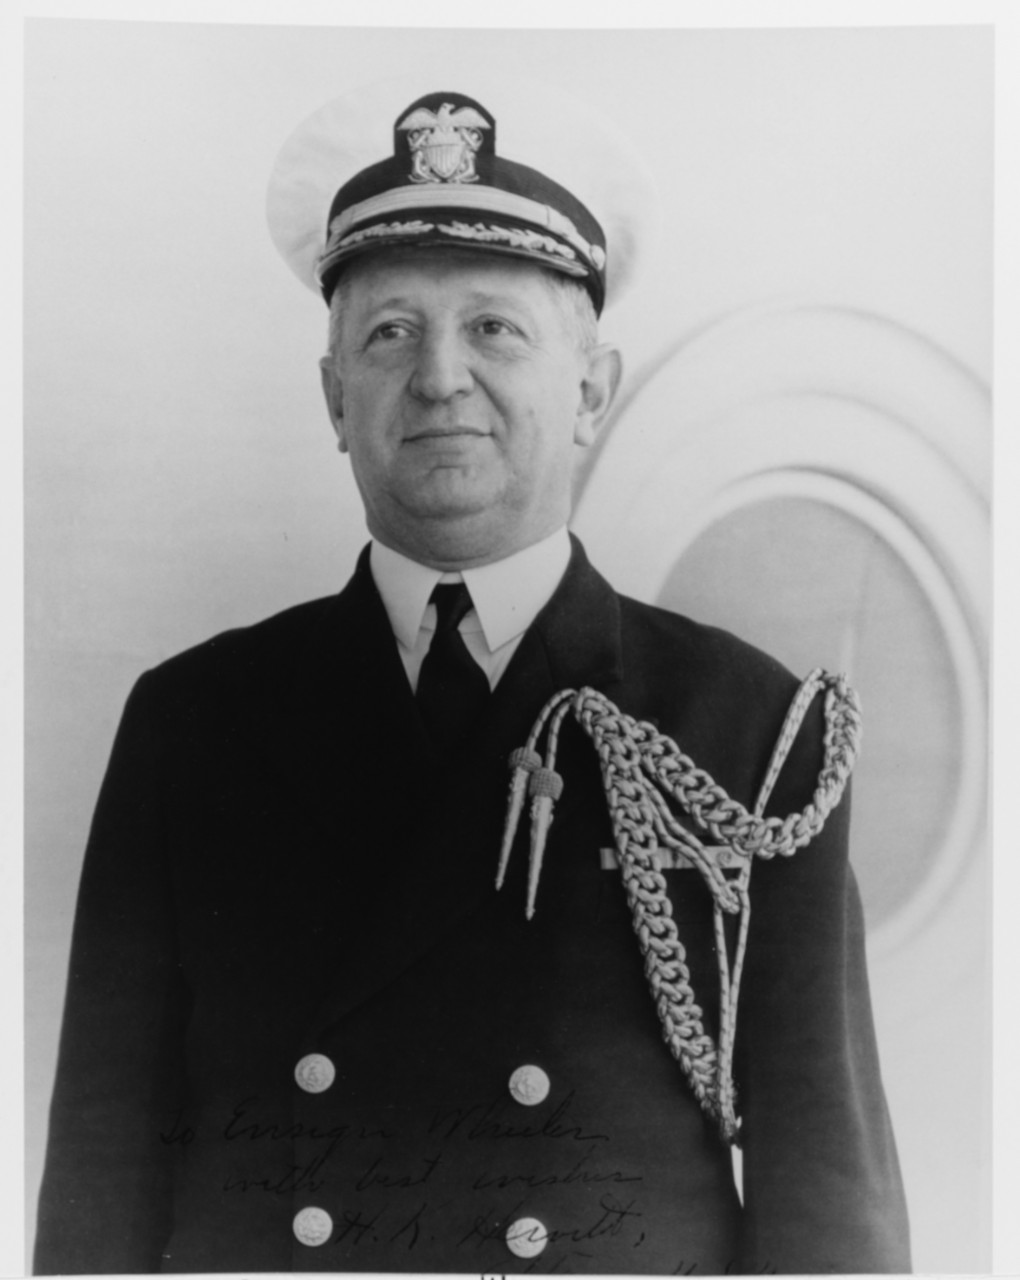 Captain Henry Kent Hewitt, USN